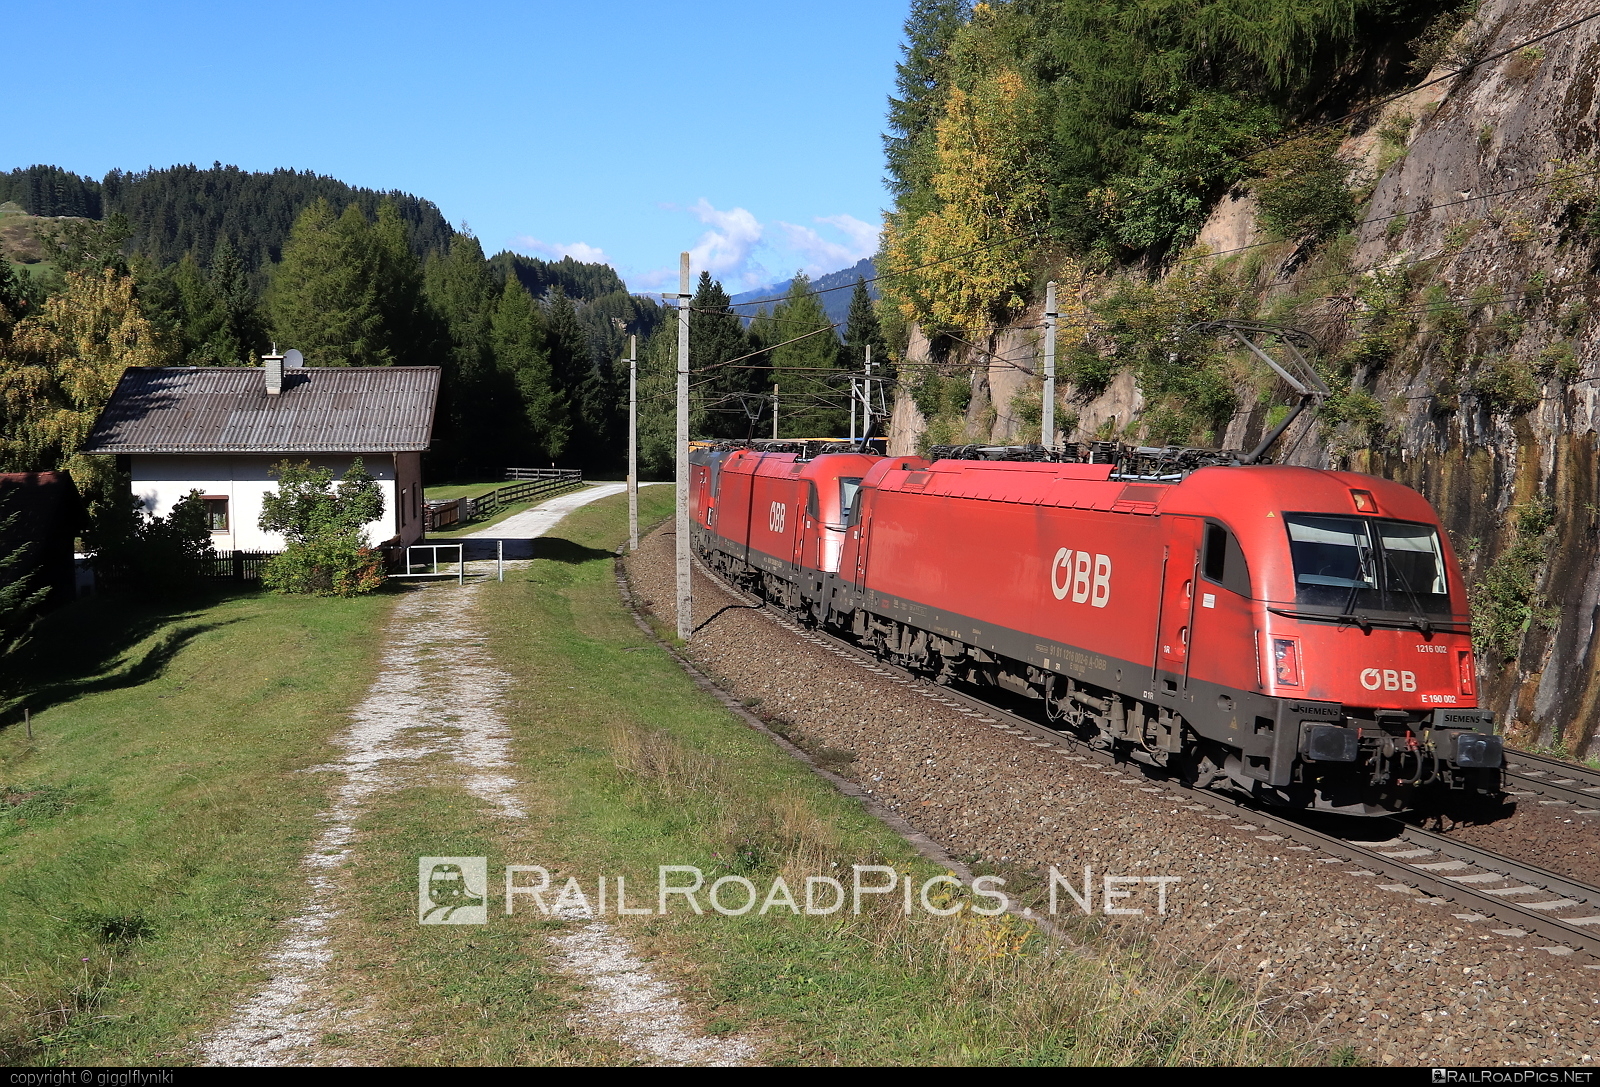 Siemens ES 64 U4 - 1216 002 operated by Rail Cargo Austria AG #es64 #es64u4 #eurosprinter #obb #osterreichischebundesbahnen #rcw #siemens #siemensEs64 #siemensEs64u4 #siemenstaurus #taurus #tauruslocomotive